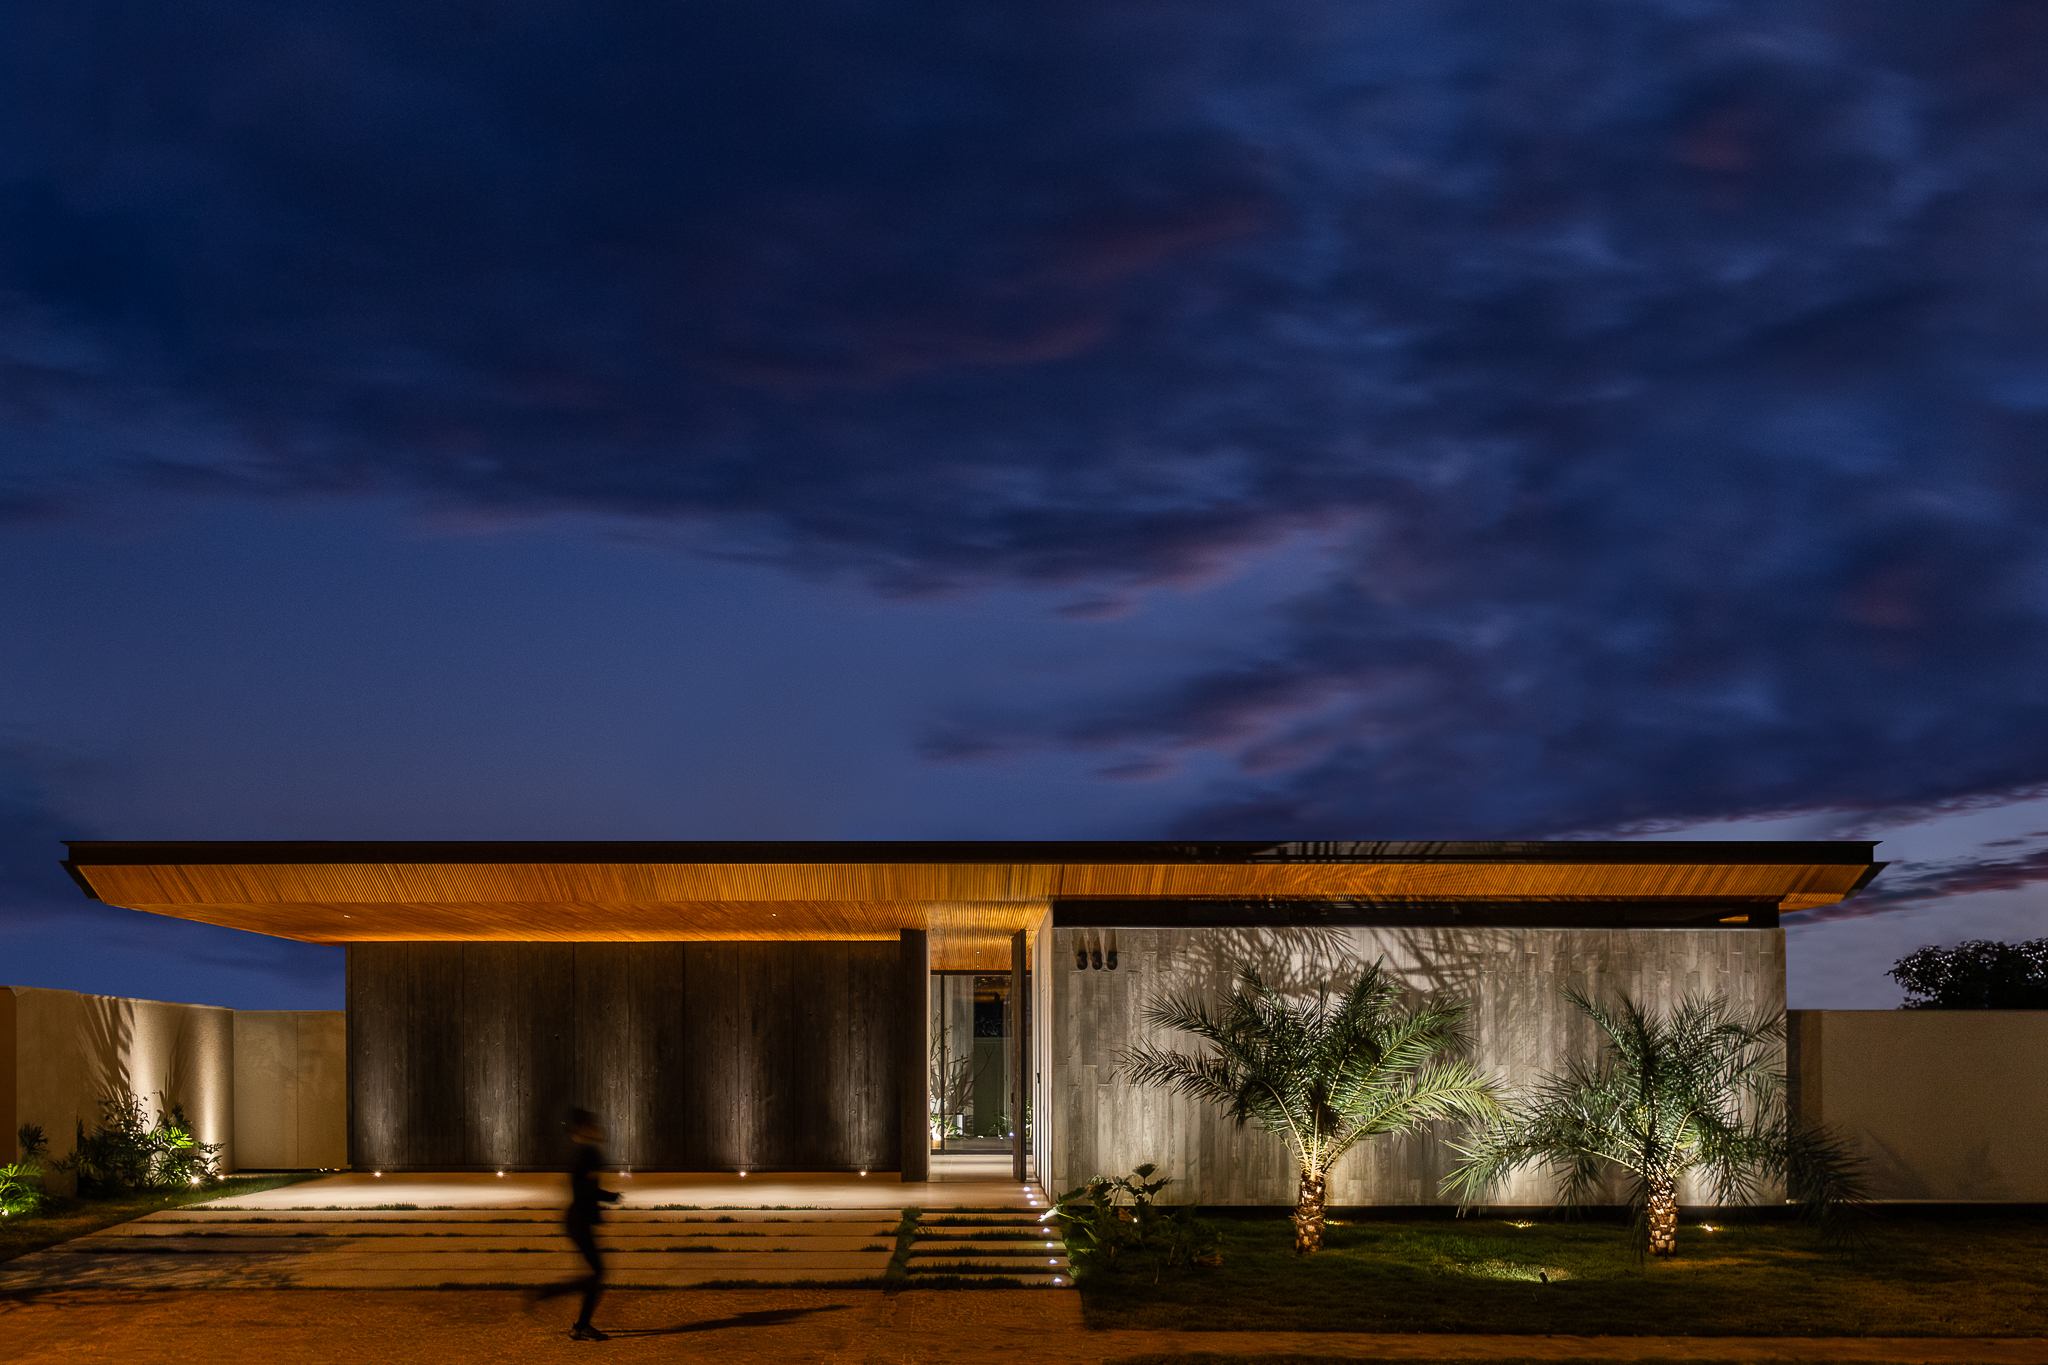 Casa de 379 m² une arquitetura minimalista e integração com o entorno. Projeto Camila Porto. Na foto, fachada com vista para o jardim.